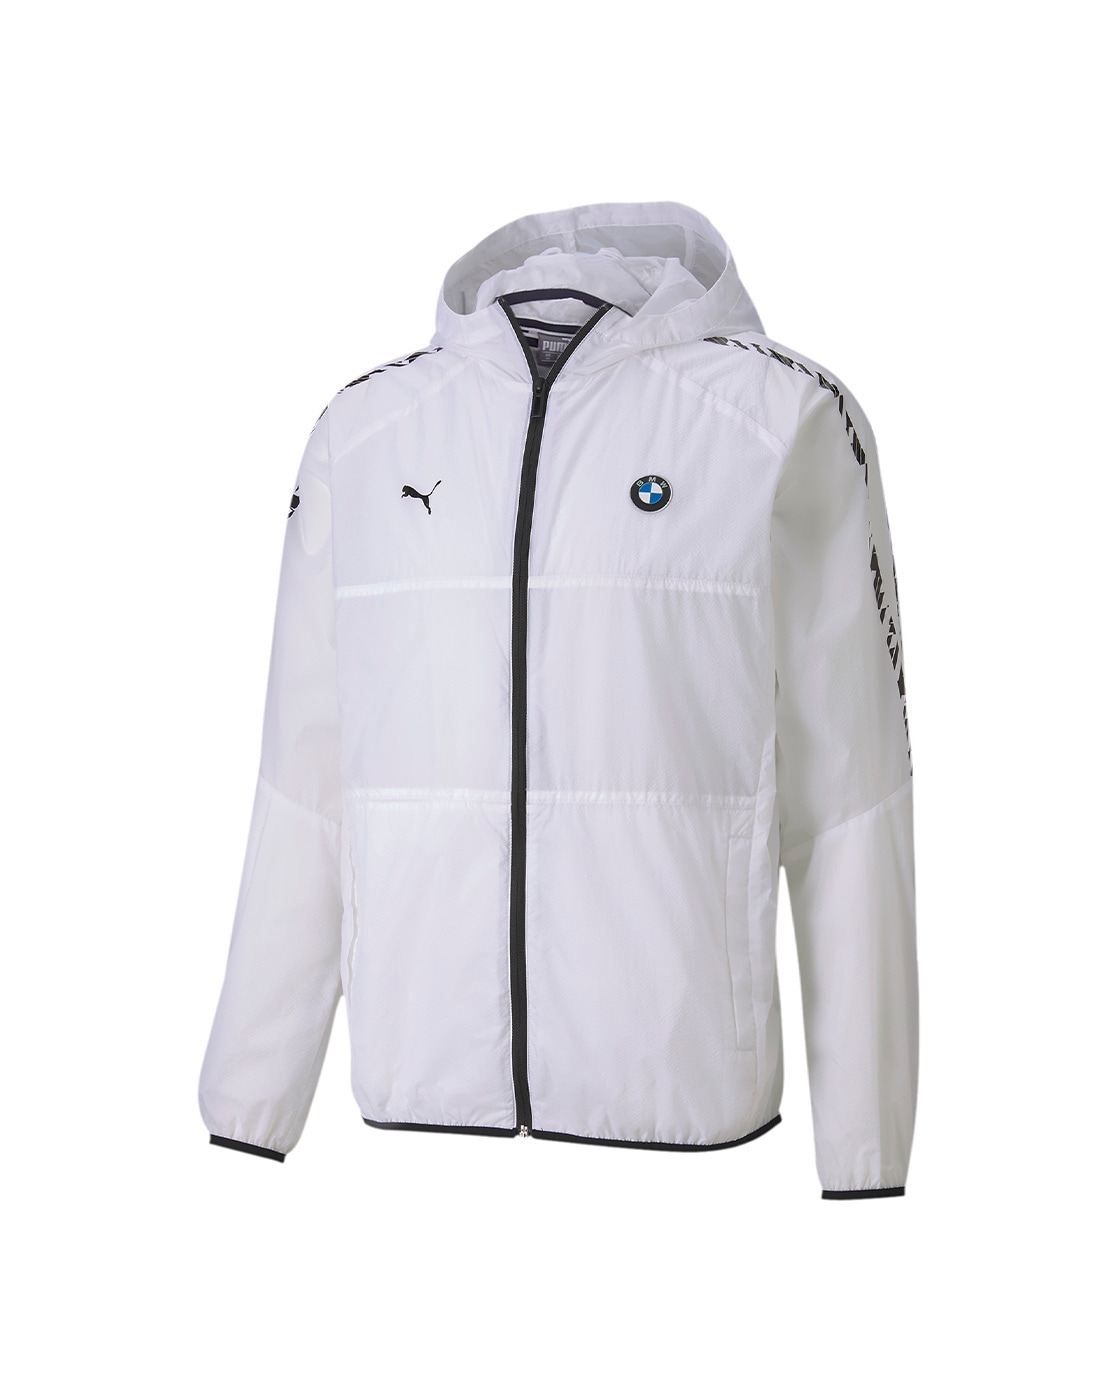 Puma Bmw Mms Monochrome FullZip Jacket Mens Grey Casual Athletic Outerwear  53892 | eBay